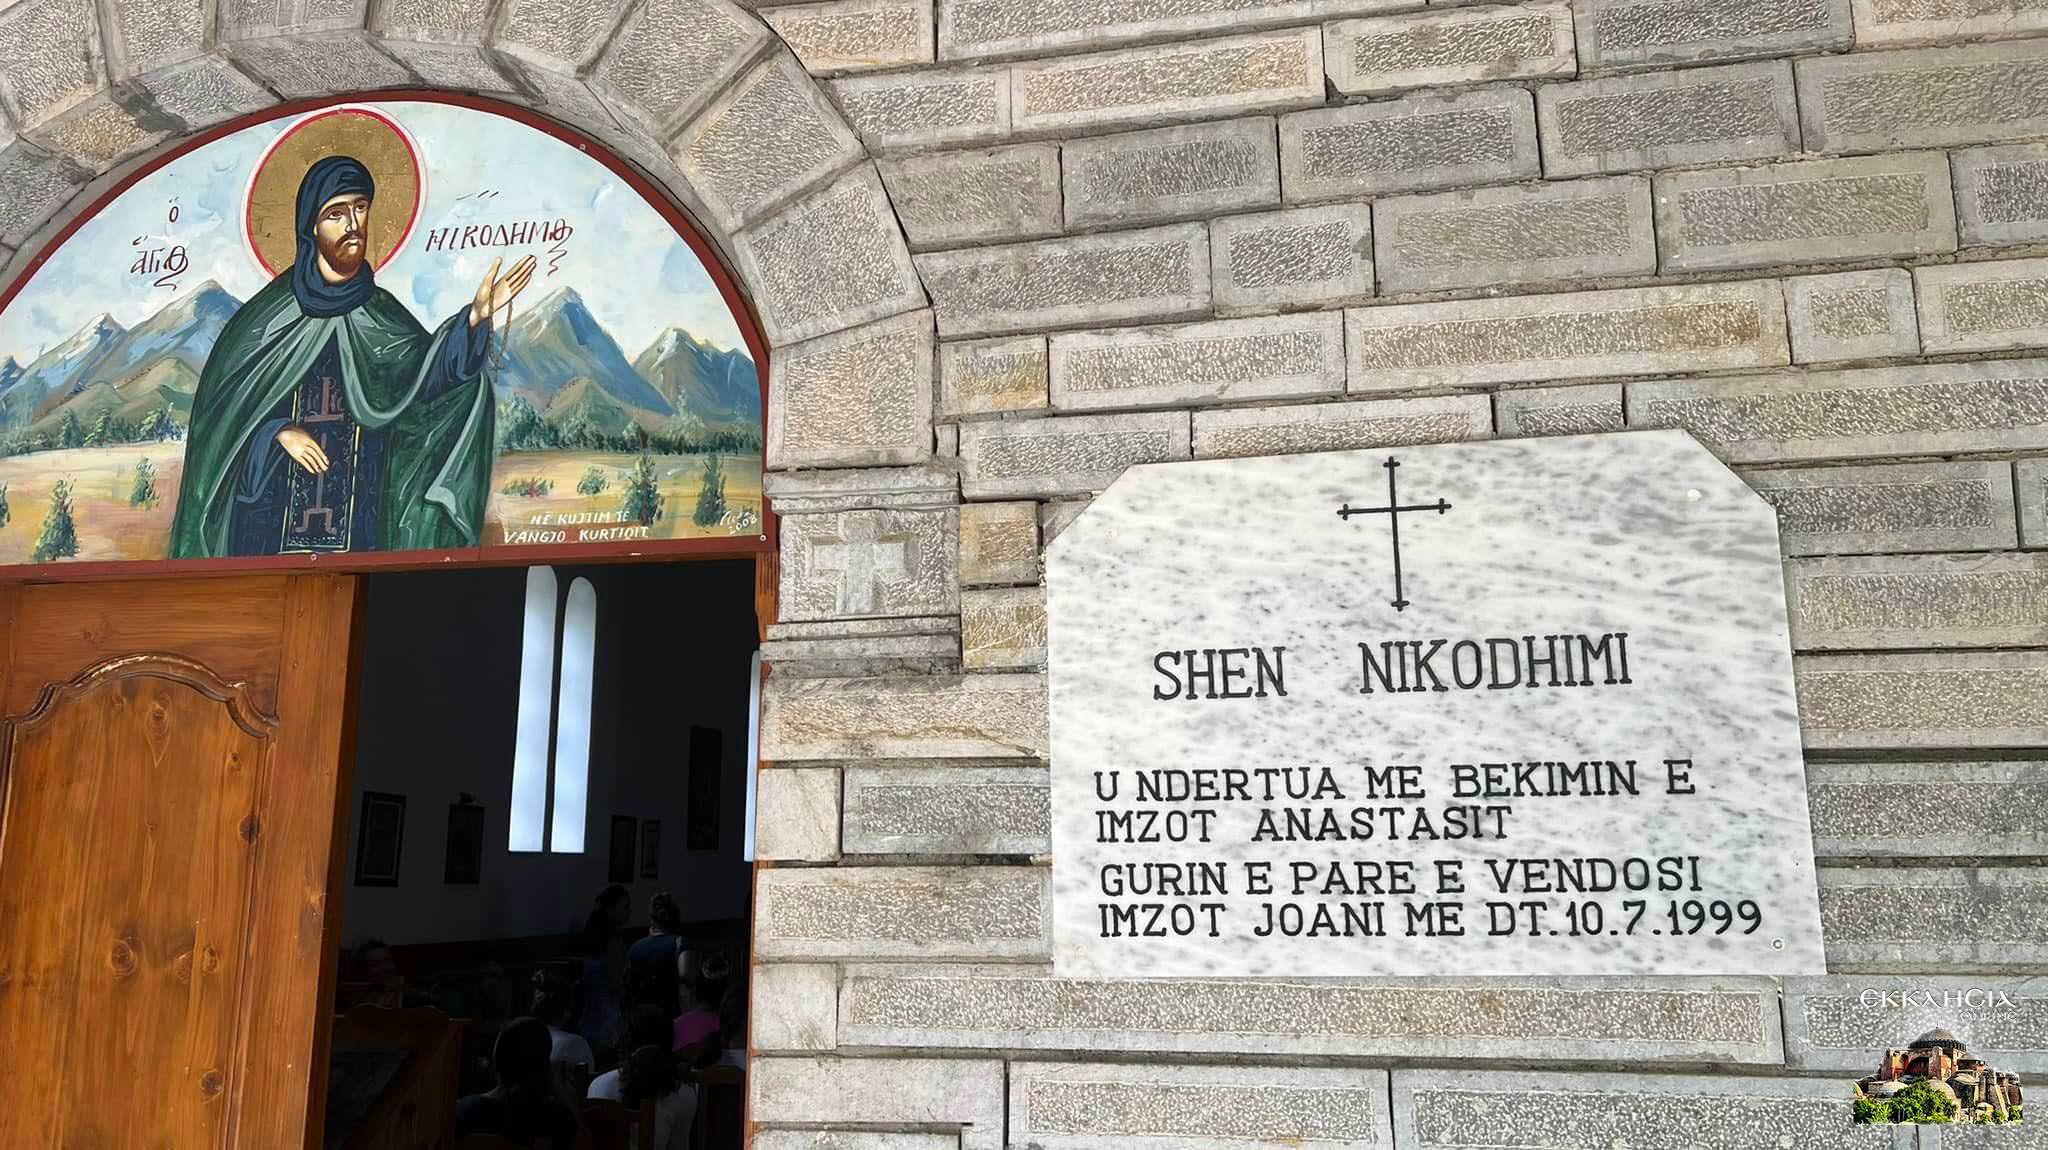 Γραφείο Νεότητας της Αρχιεπισκοπής Τιράνων οργάνωσε κατασκηνωτικό πρόγραμμα σε δύο Μοναστήρια της Κορυτσάς